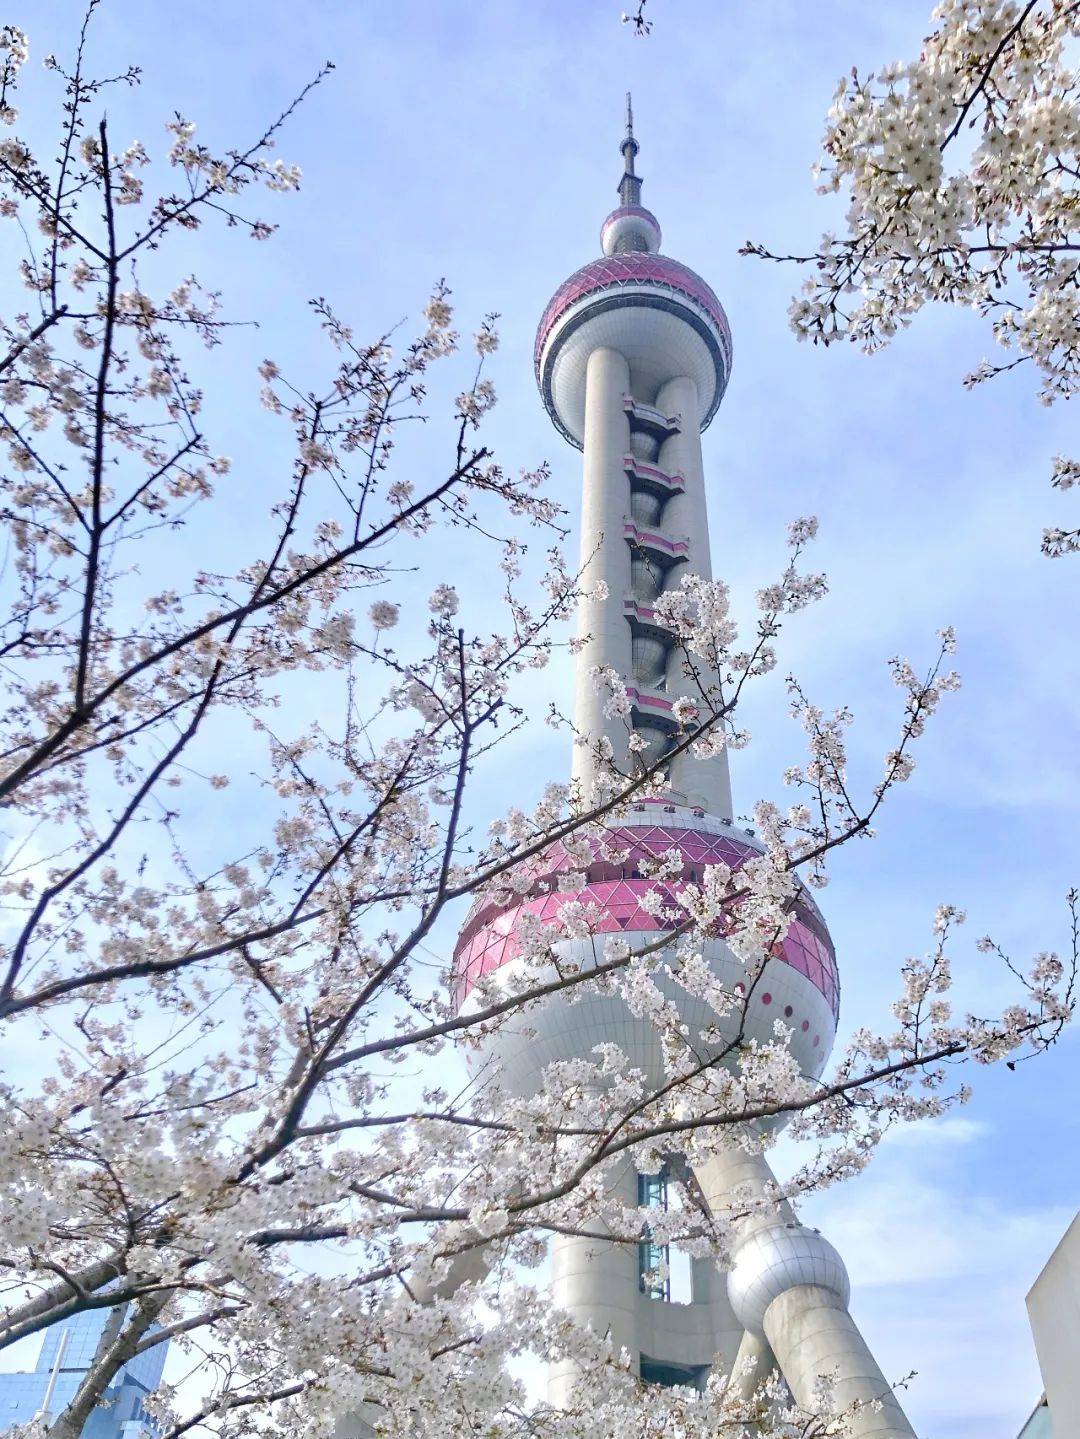 徜徉在粉色花海中欣赏多姿多彩的春日图景春和景明,鲁迅公园里大片